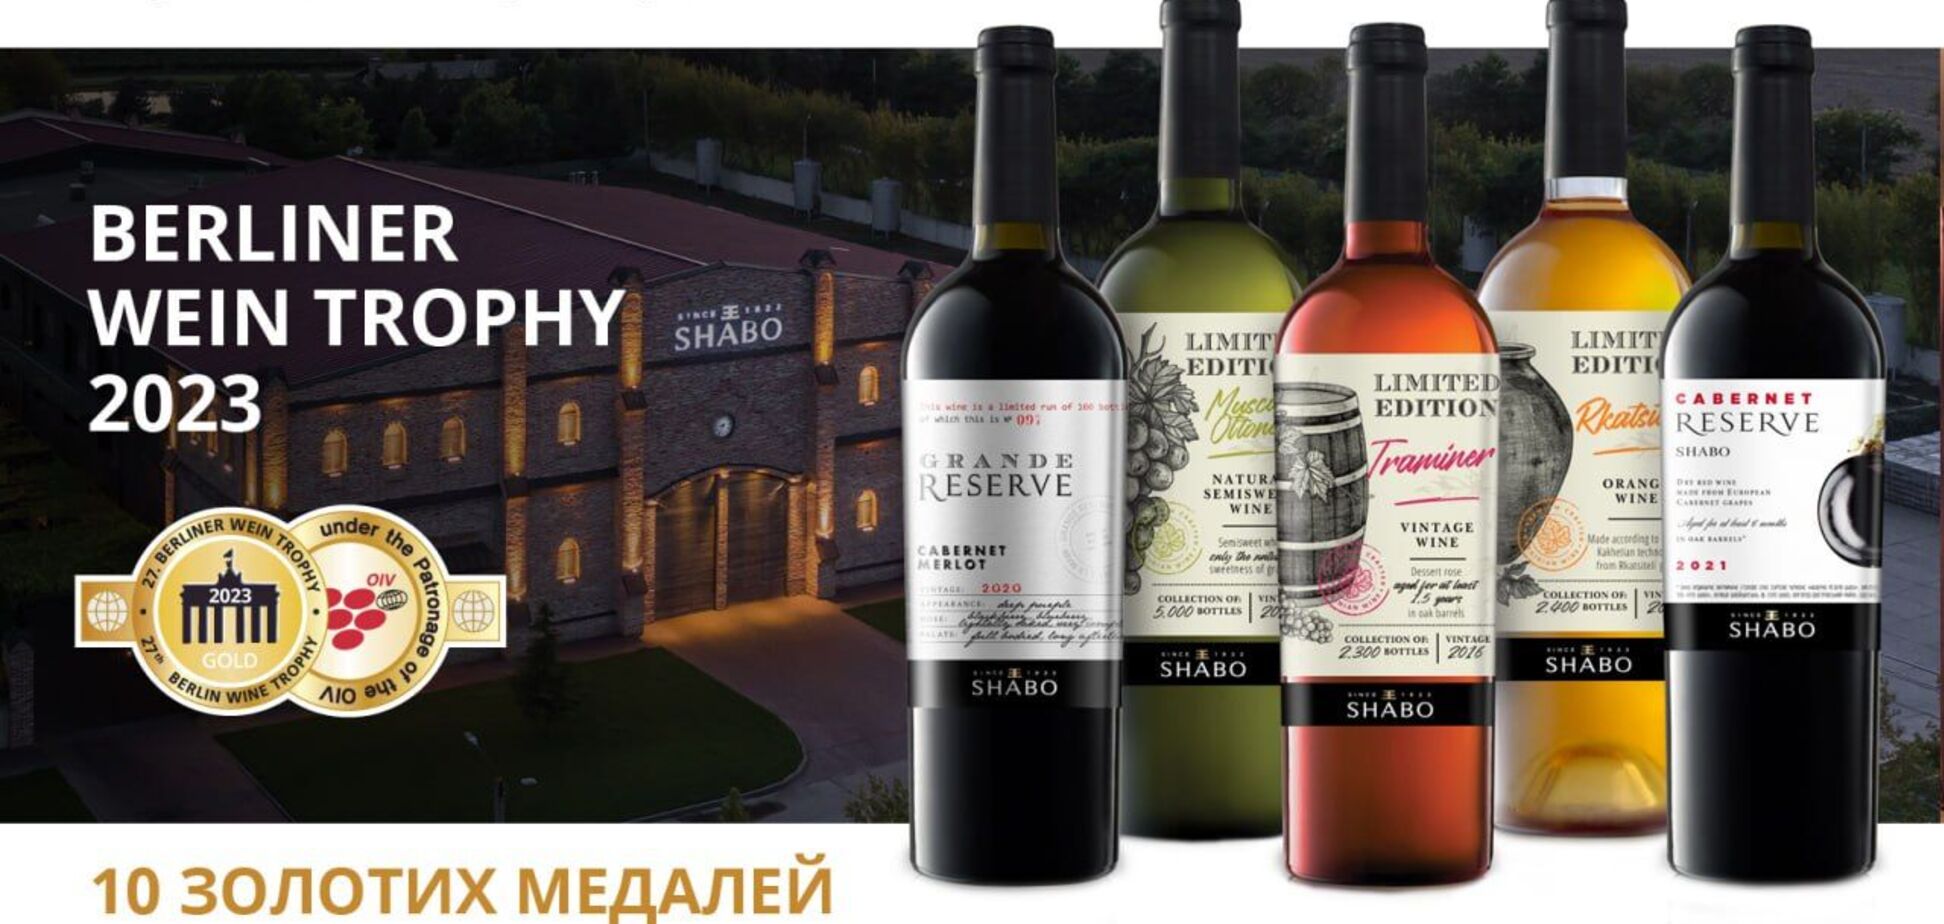 Українські вина SHABO отримали 10 золотих медалей на конкурсі Berliner Wine Trophy 2023